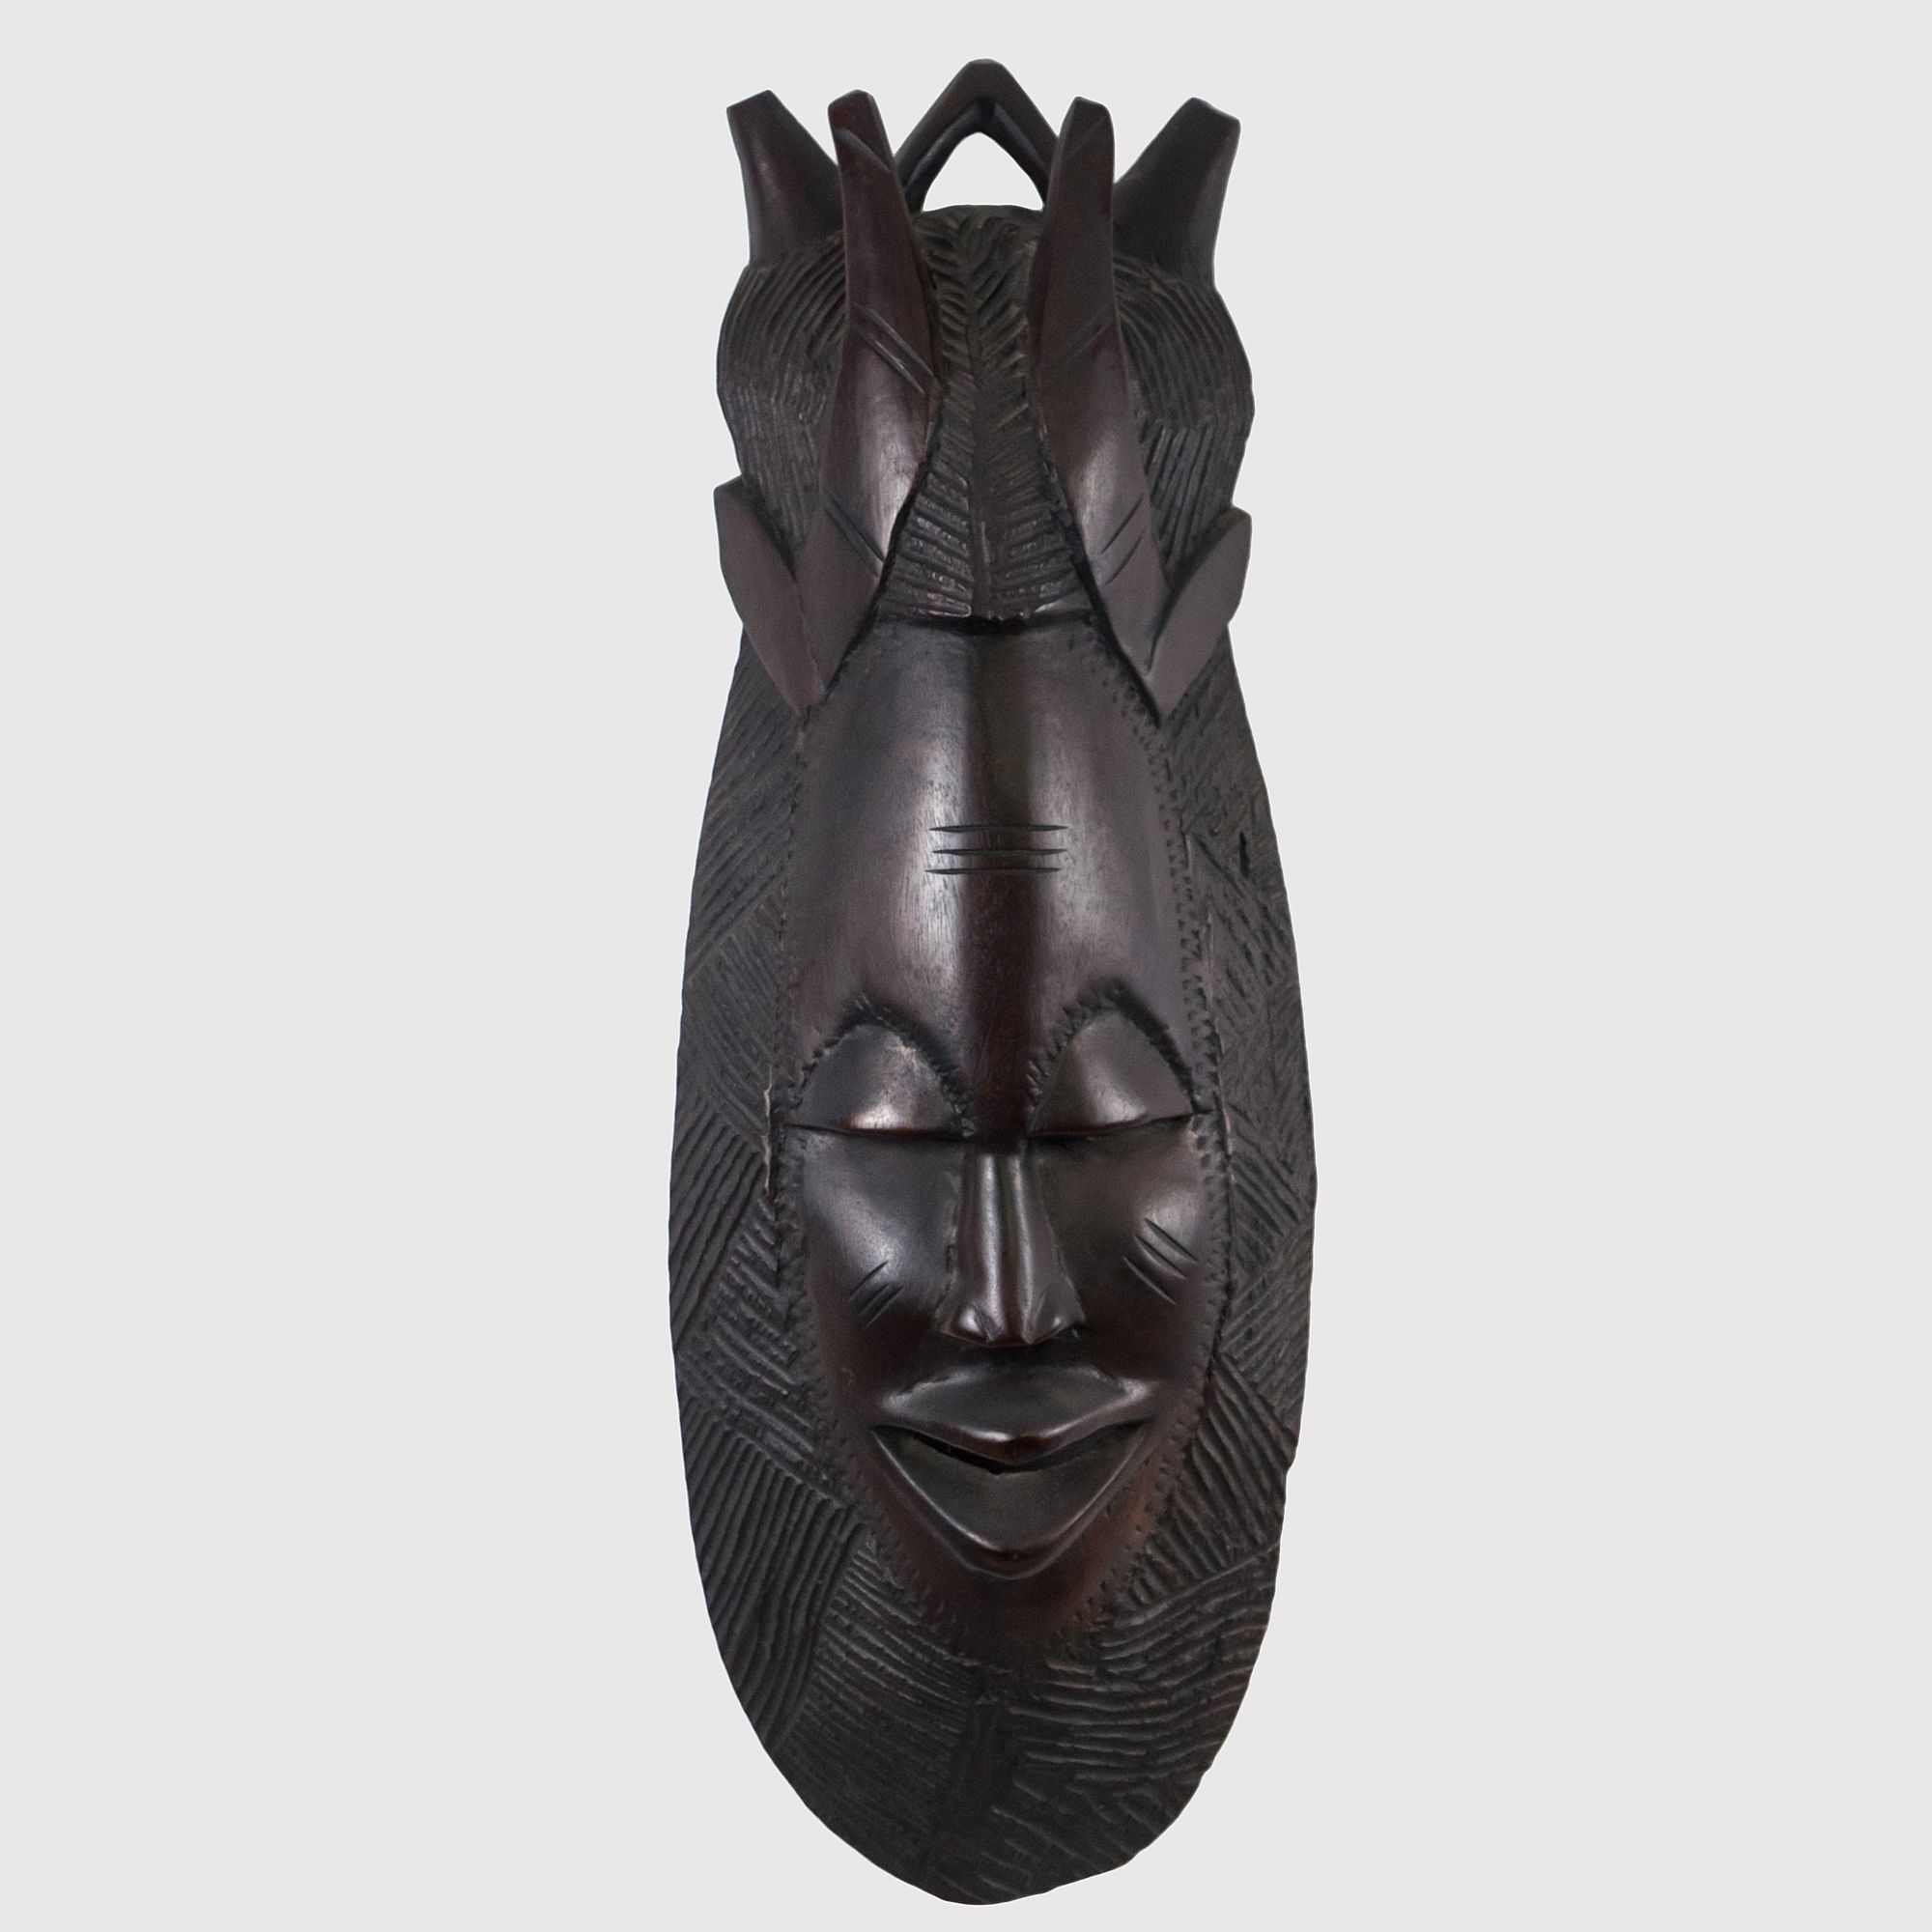 Masca traditionala africana lucrata manual din lemn exotic cu motivul ritualului de initiere in Africa anii 50-60 Articole de colectie